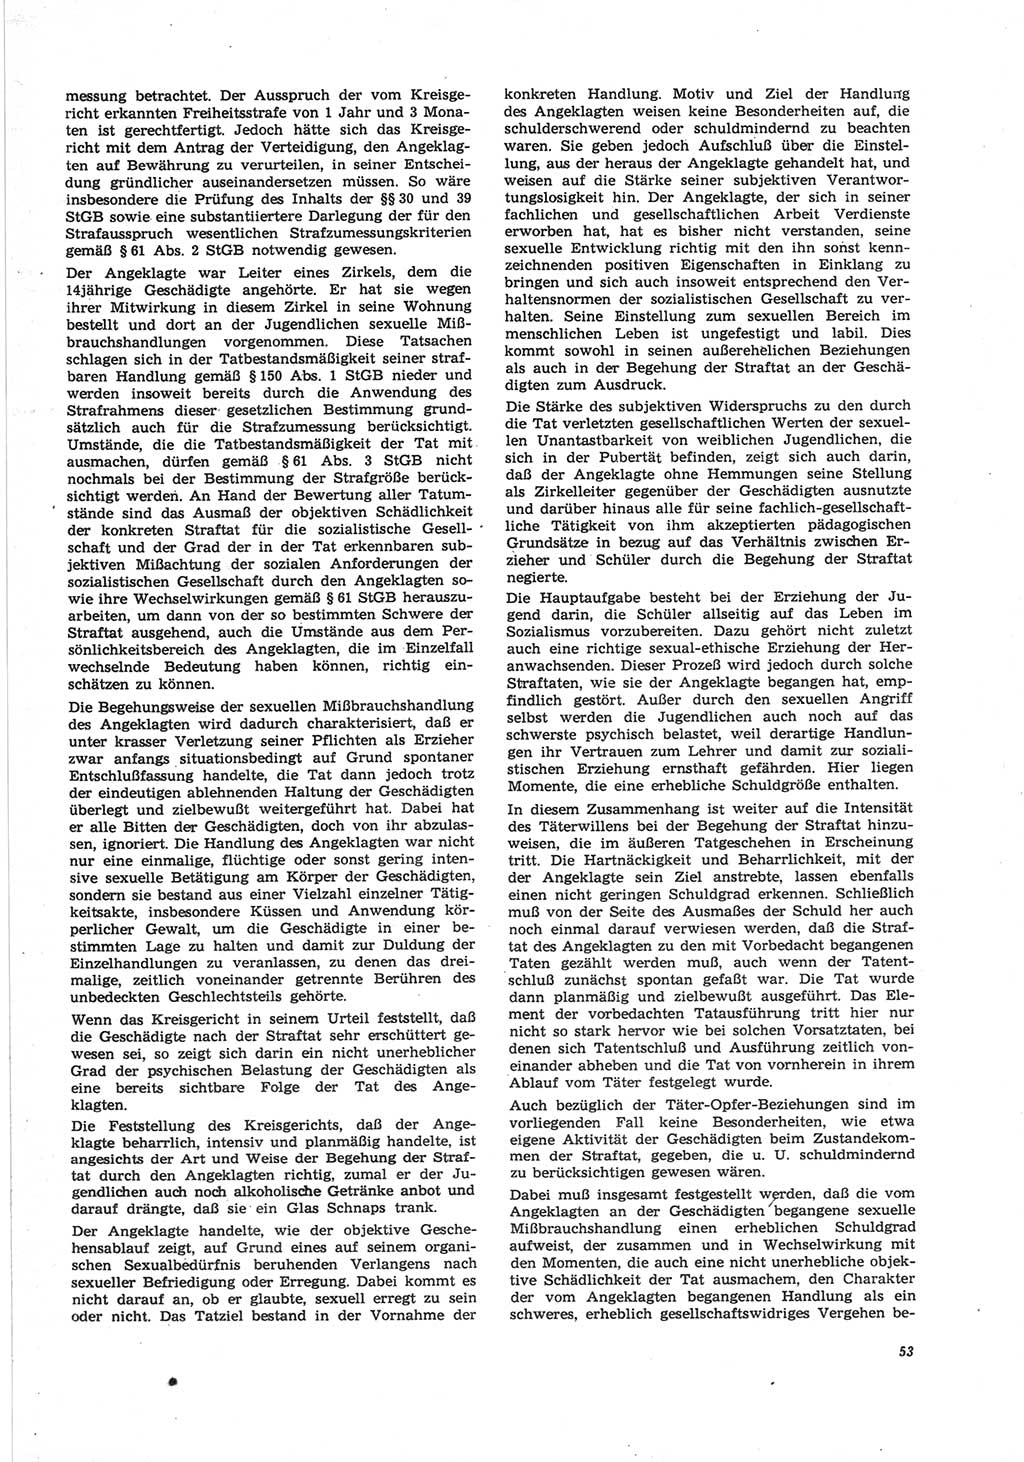 Neue Justiz (NJ), Zeitschrift für Recht und Rechtswissenschaft [Deutsche Demokratische Republik (DDR)], 25. Jahrgang 1971, Seite 53 (NJ DDR 1971, S. 53)